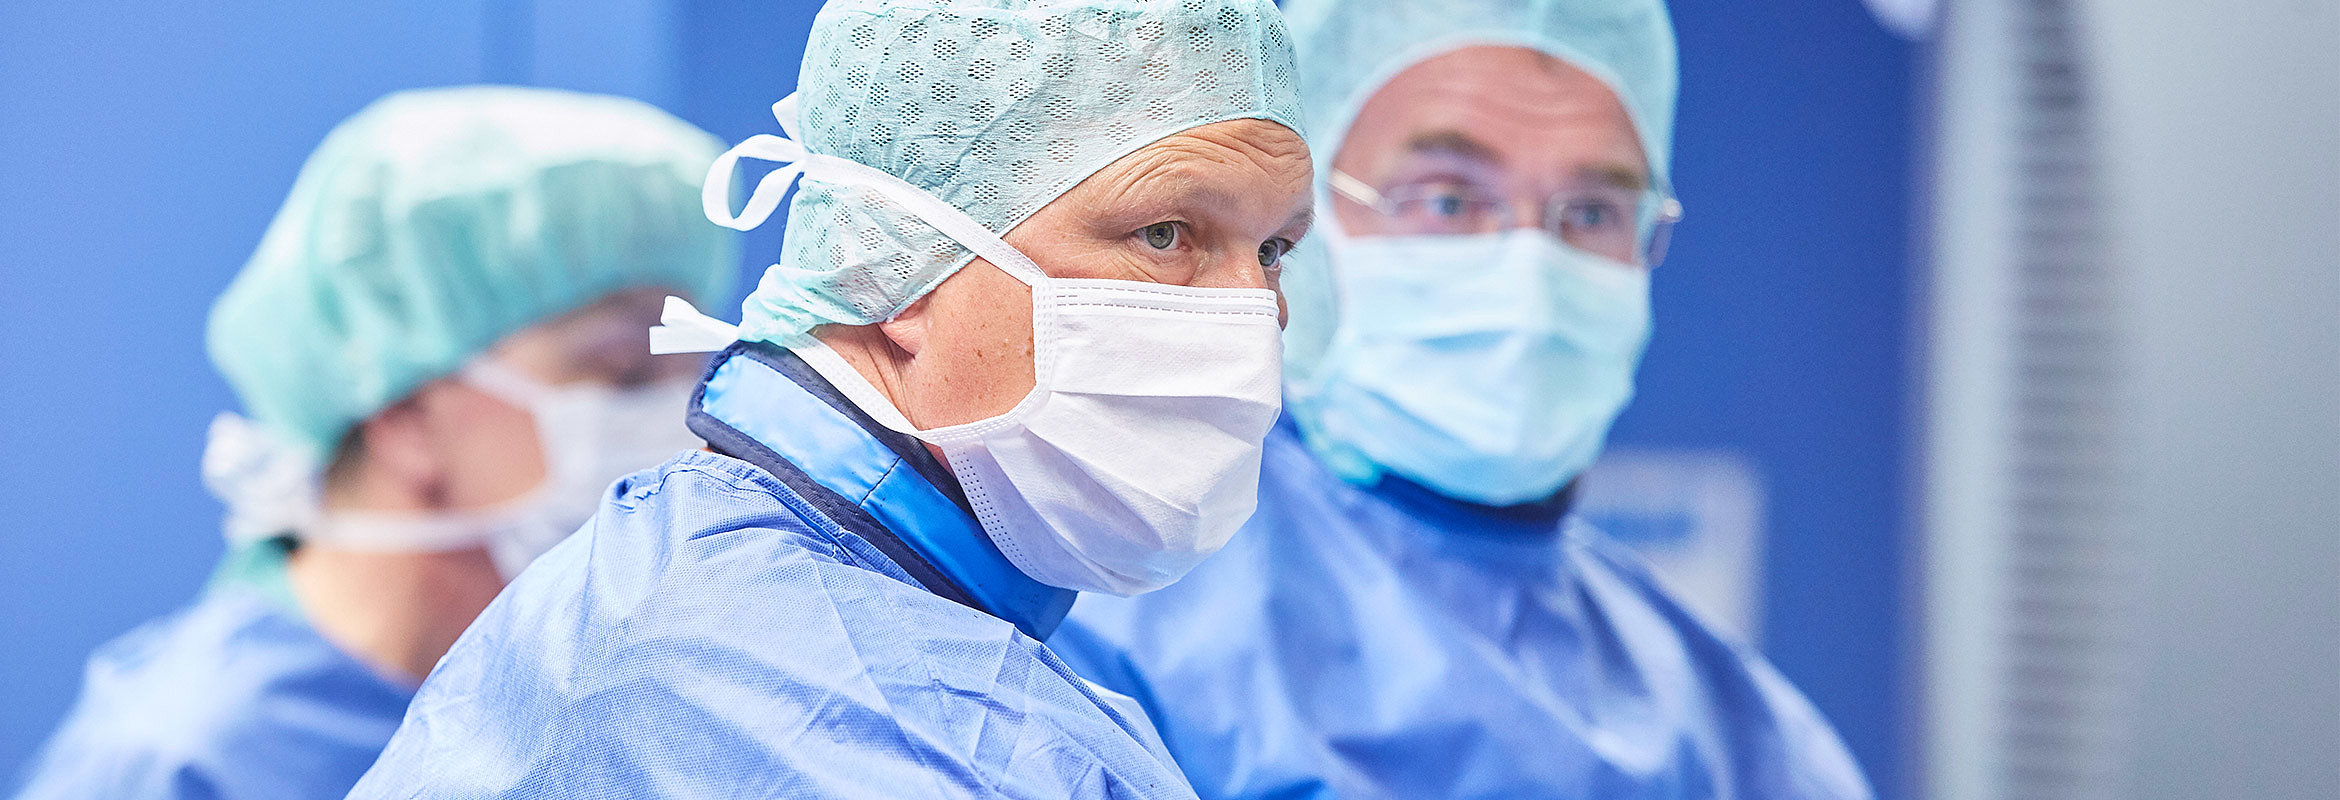 Priv.-Doz. Dr. med. Thomas Ruffing mit seinen Kollegen aus der Klinik für Unfallchirurgie und Orthopädie in Kaiserslautern im OP